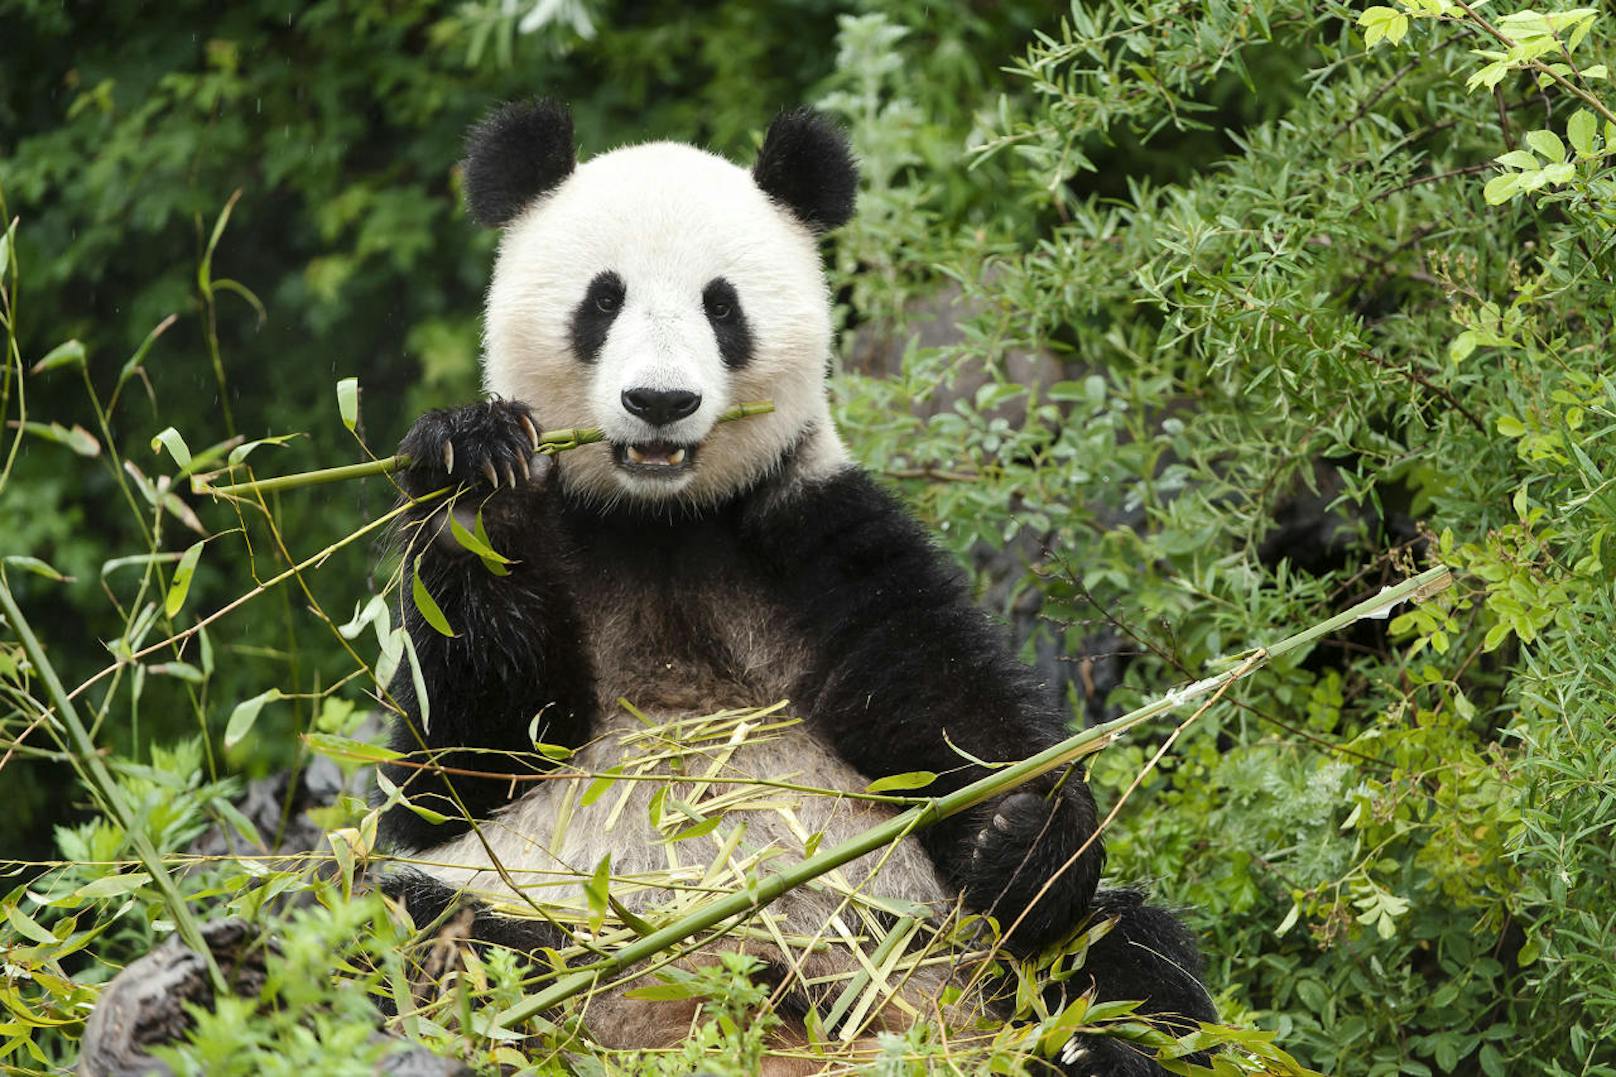 Vor allem bei den Pandas ist für den Fotografen Geduld angesagt.